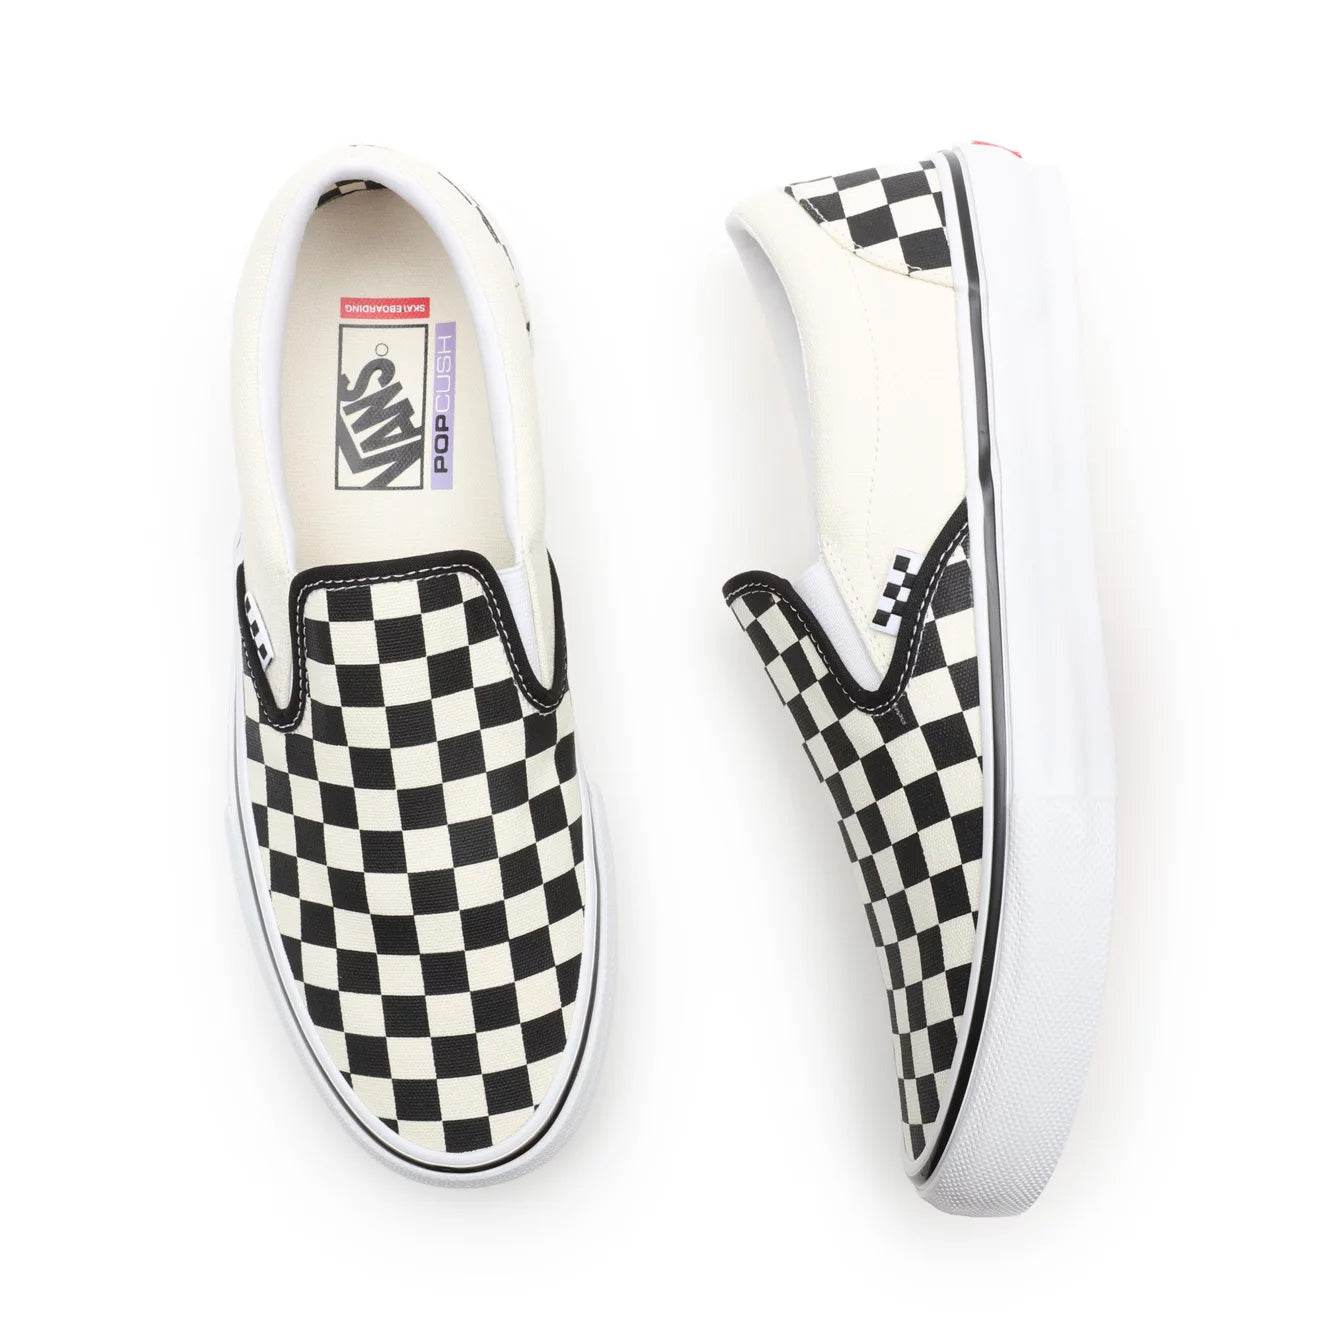 Vans Skate Slip On Shoes - Black/White Checkerboard